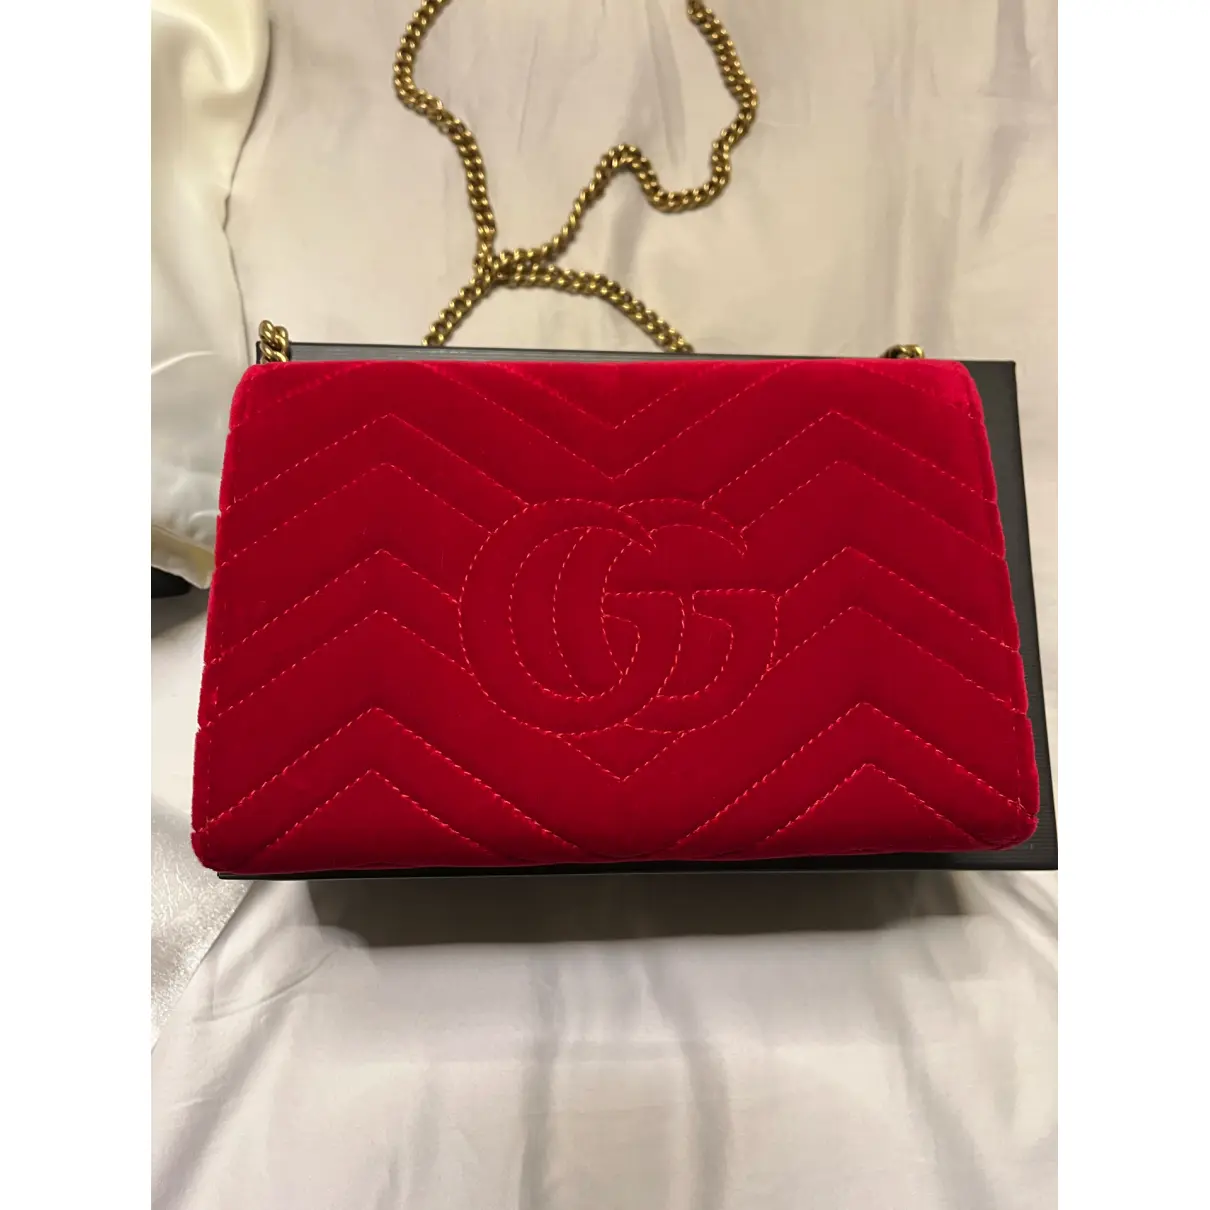 Buy Gucci GG Marmont Chain velvet crossbody bag online